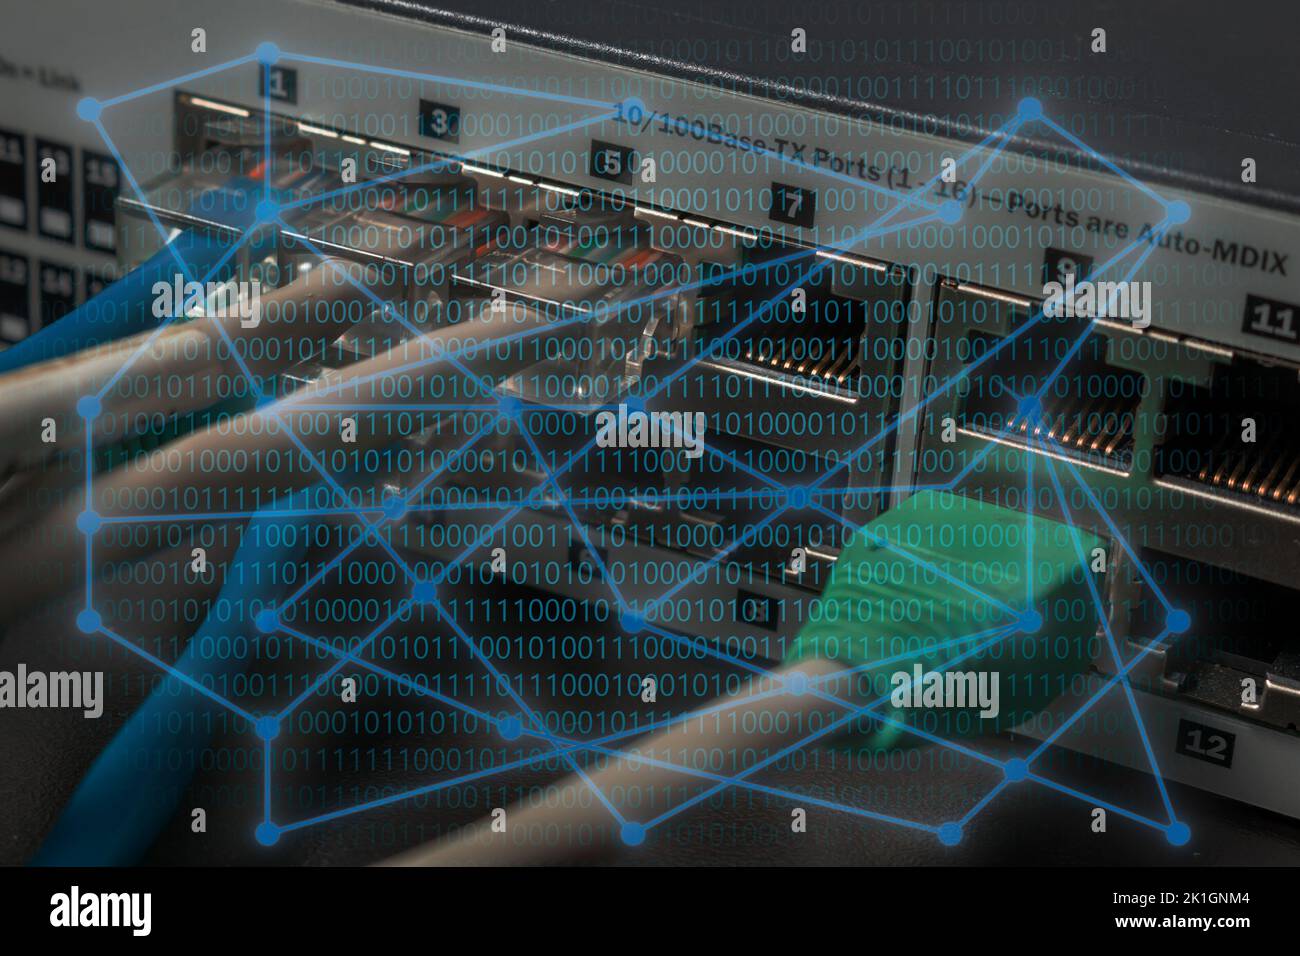 Grande concetto di reti e sicurezza informatica. Diagramma di rete con testo binario. Apparecchiatura di rete o switch in background. Foto Stock